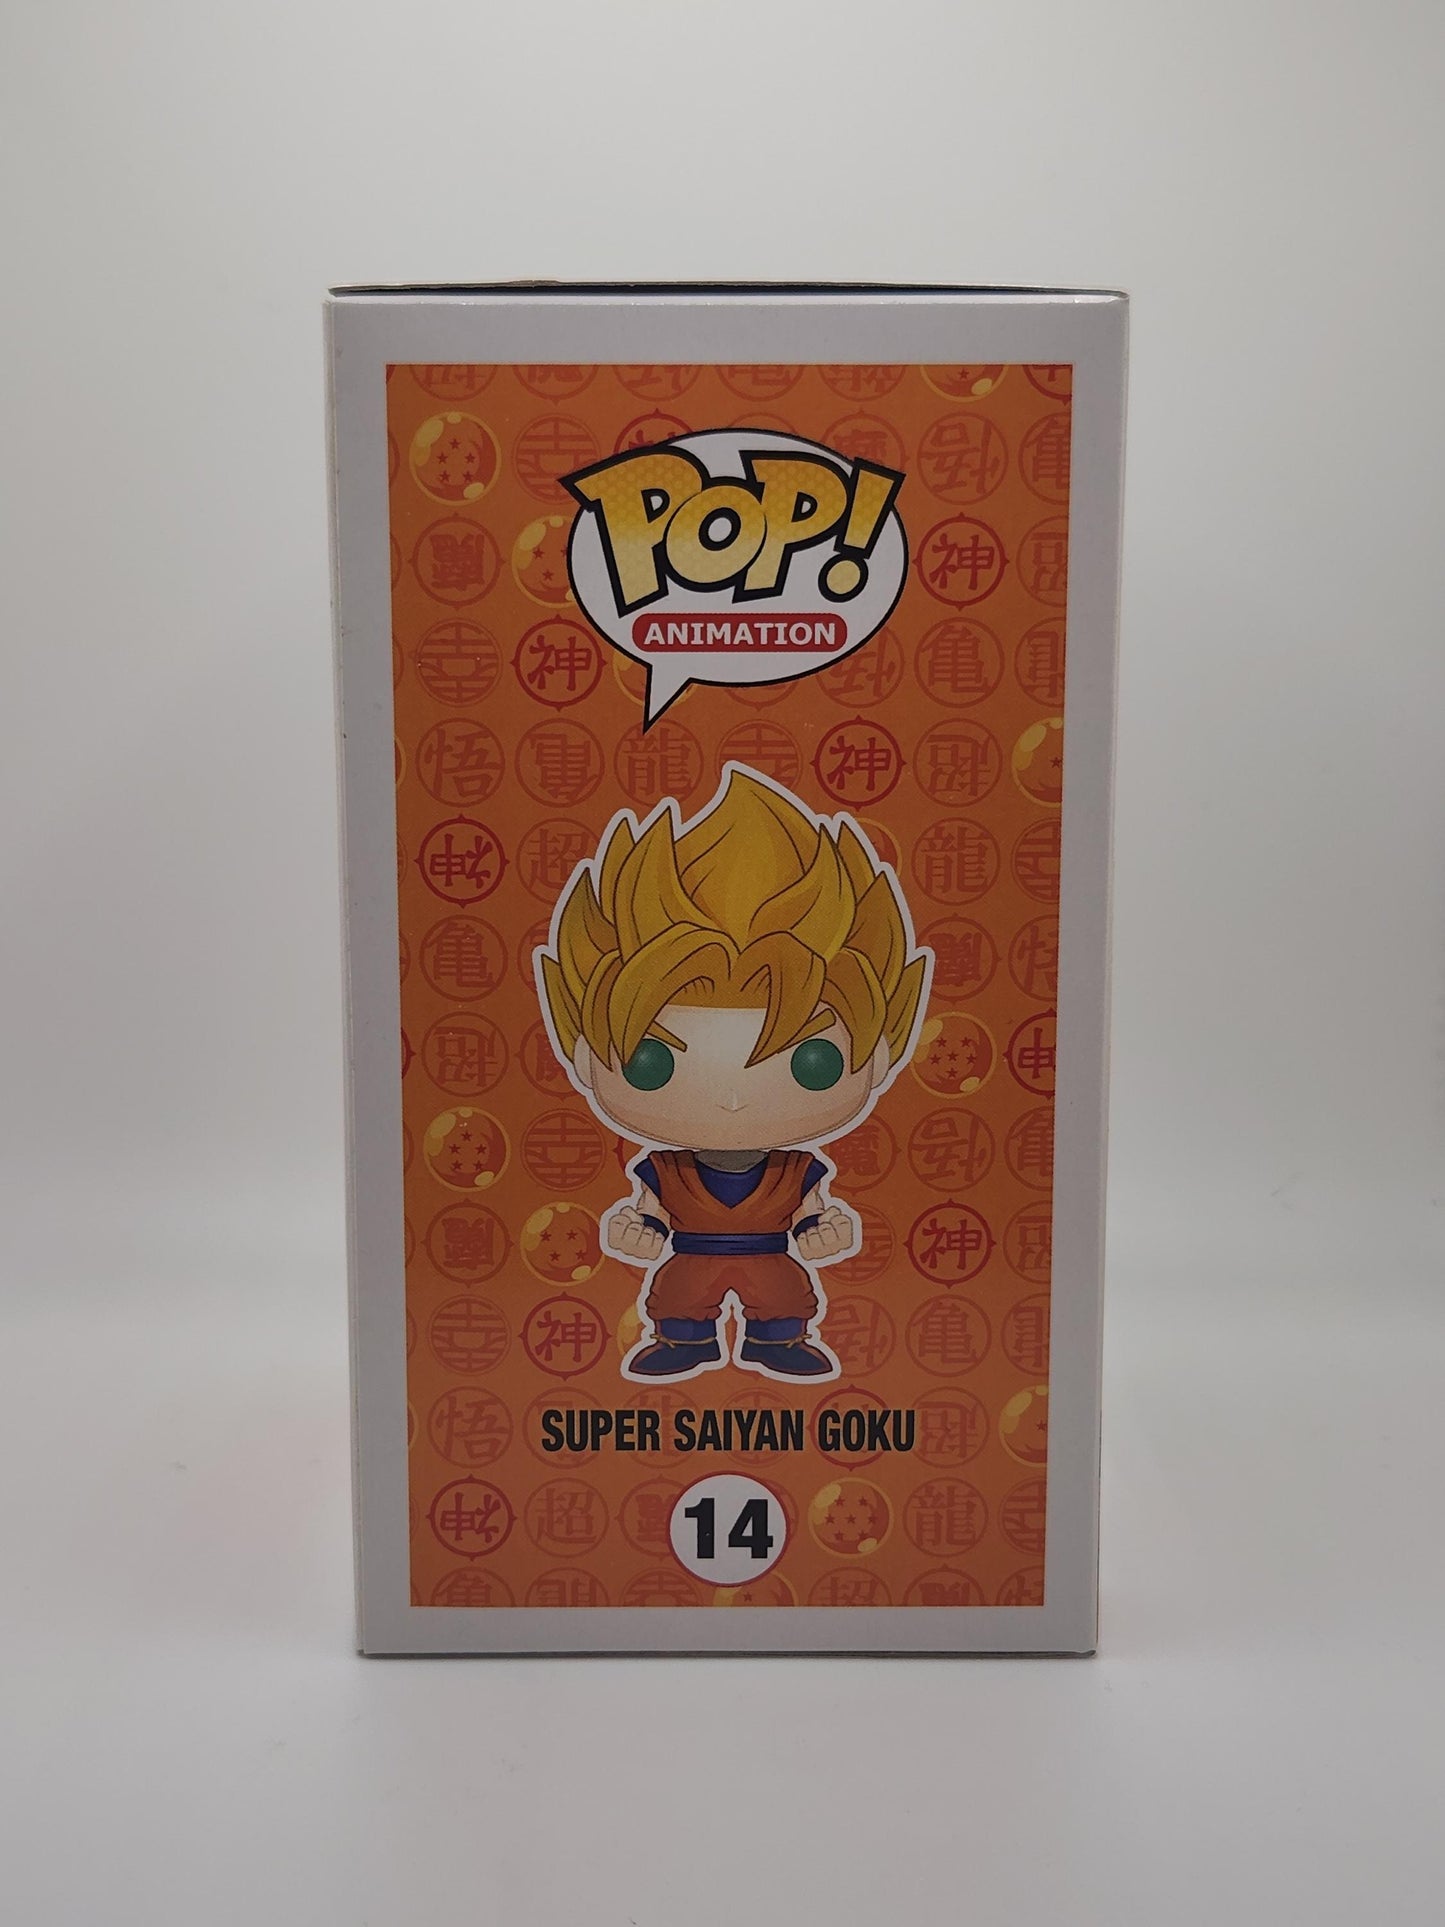 Super Saiyan Goku - #14 - Condition 9/10